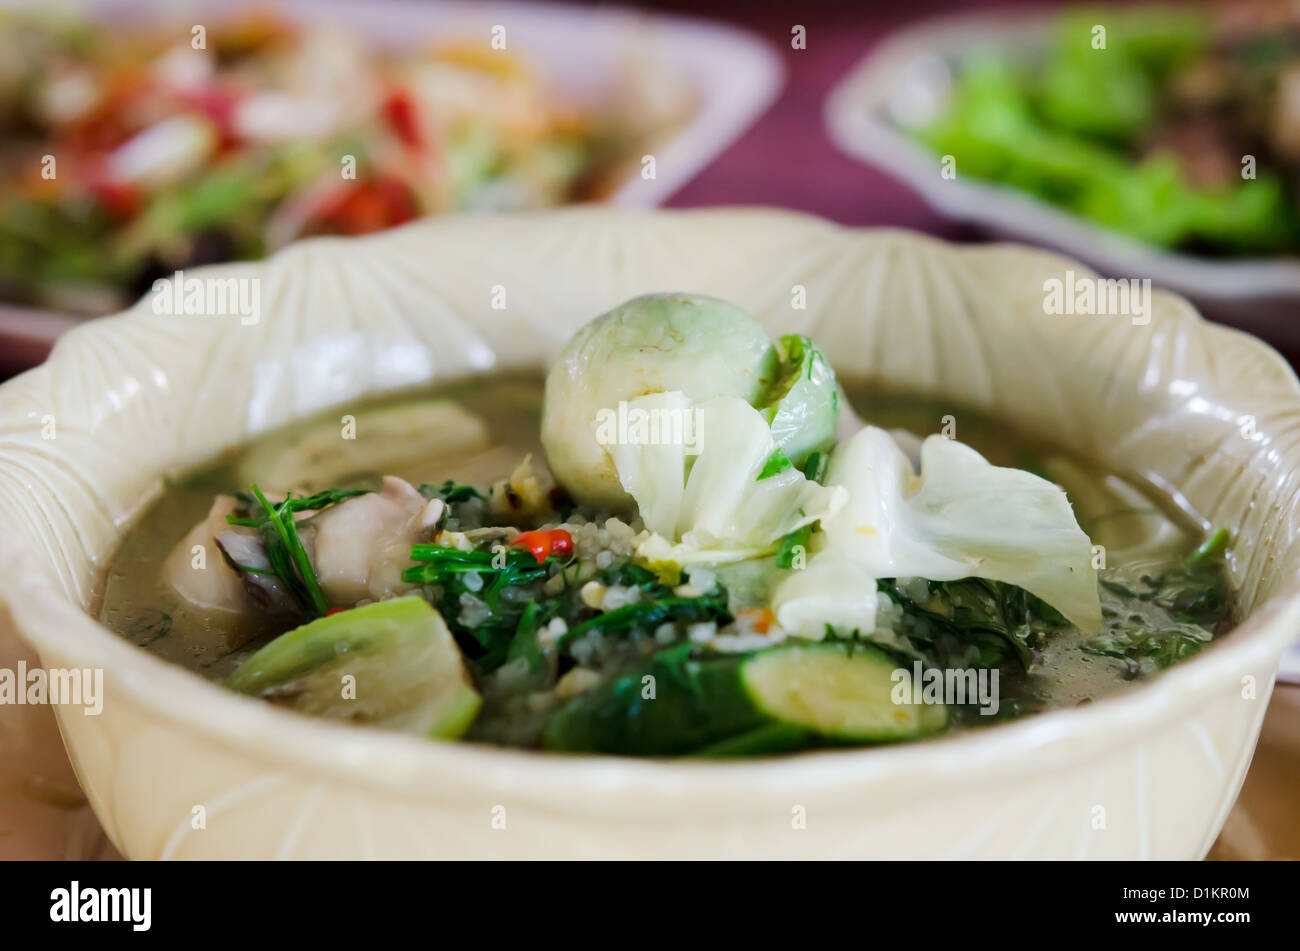 scharf und würzig, eine herzhafte Suppe aus Gewürzen und Gemüse hergestellt Stockfoto